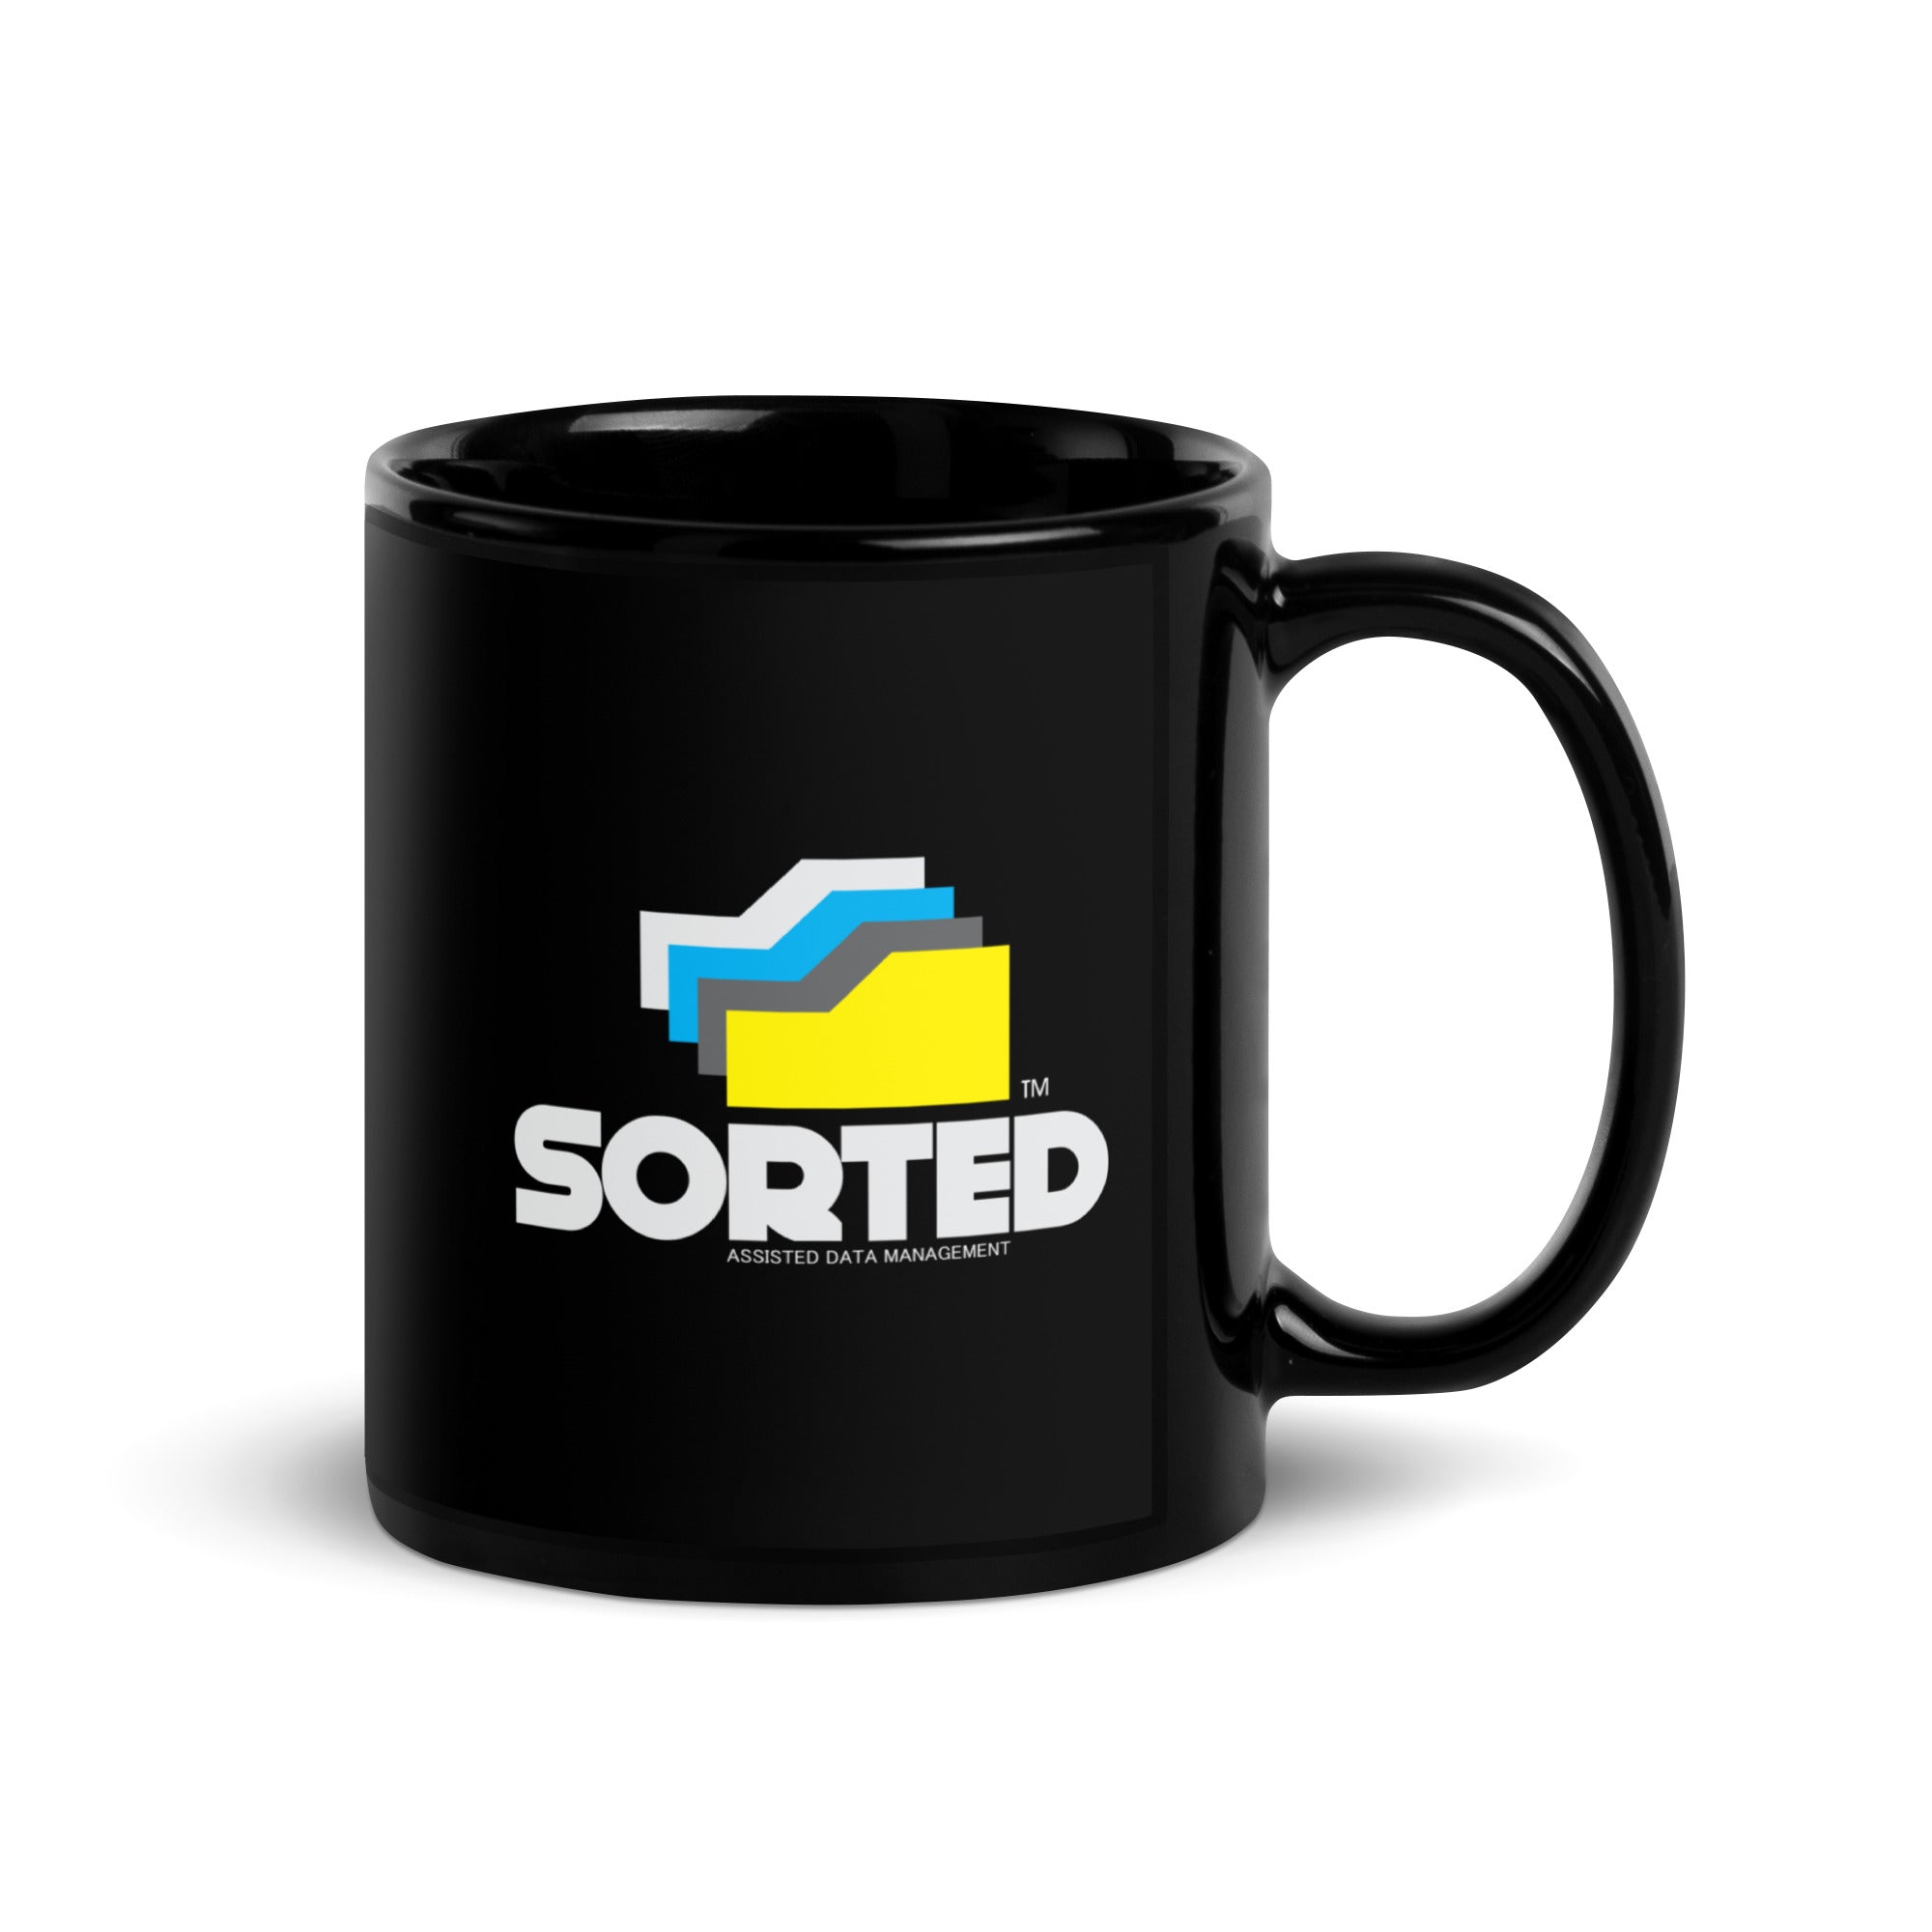 SORTED Mug